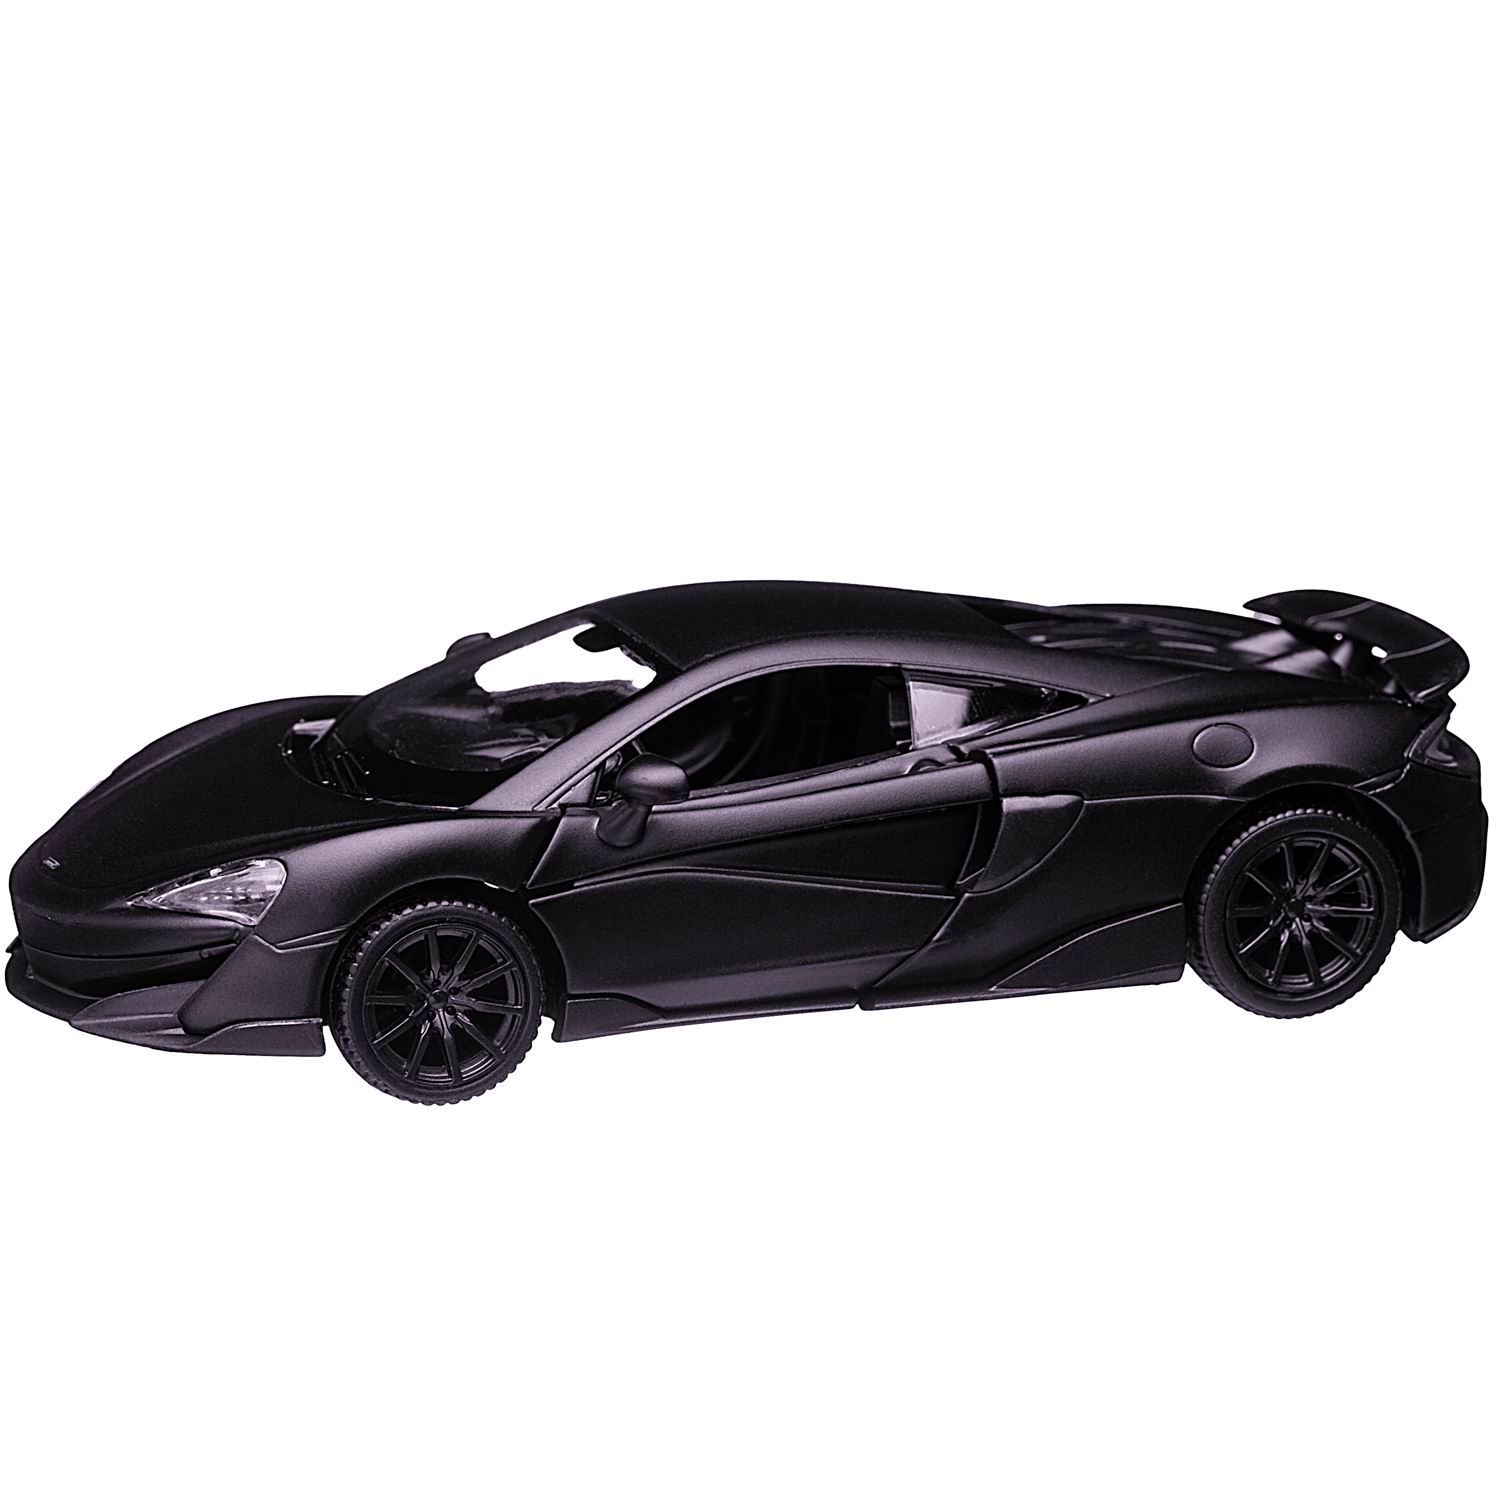 Машина металлическая Uni-Fortune McLaren 600LT черный матовый цвет двери открываются 554985M - фото 5